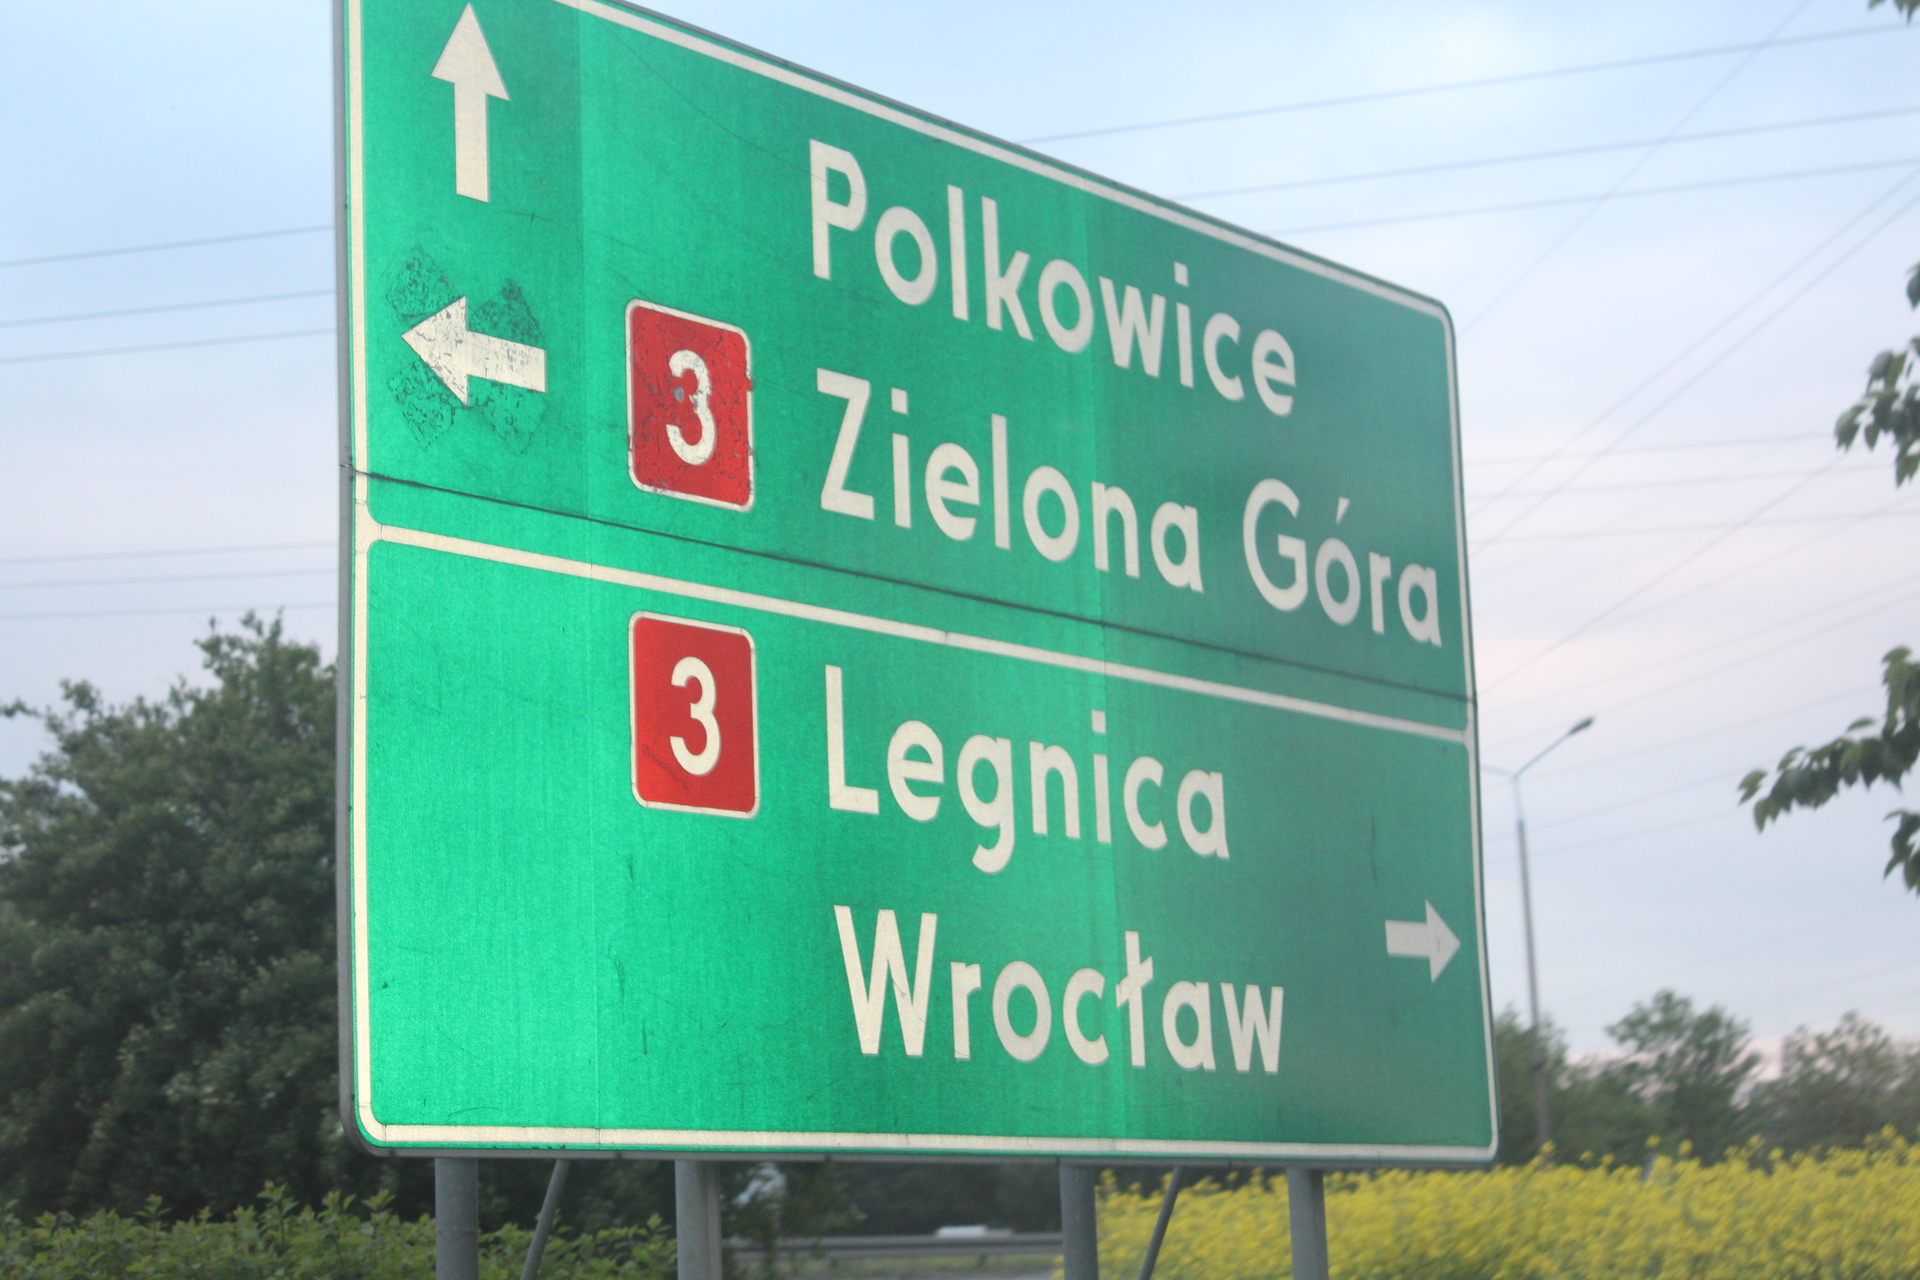 Jest lewoskręt na polkowickiej „3” w kierunku Głogowa